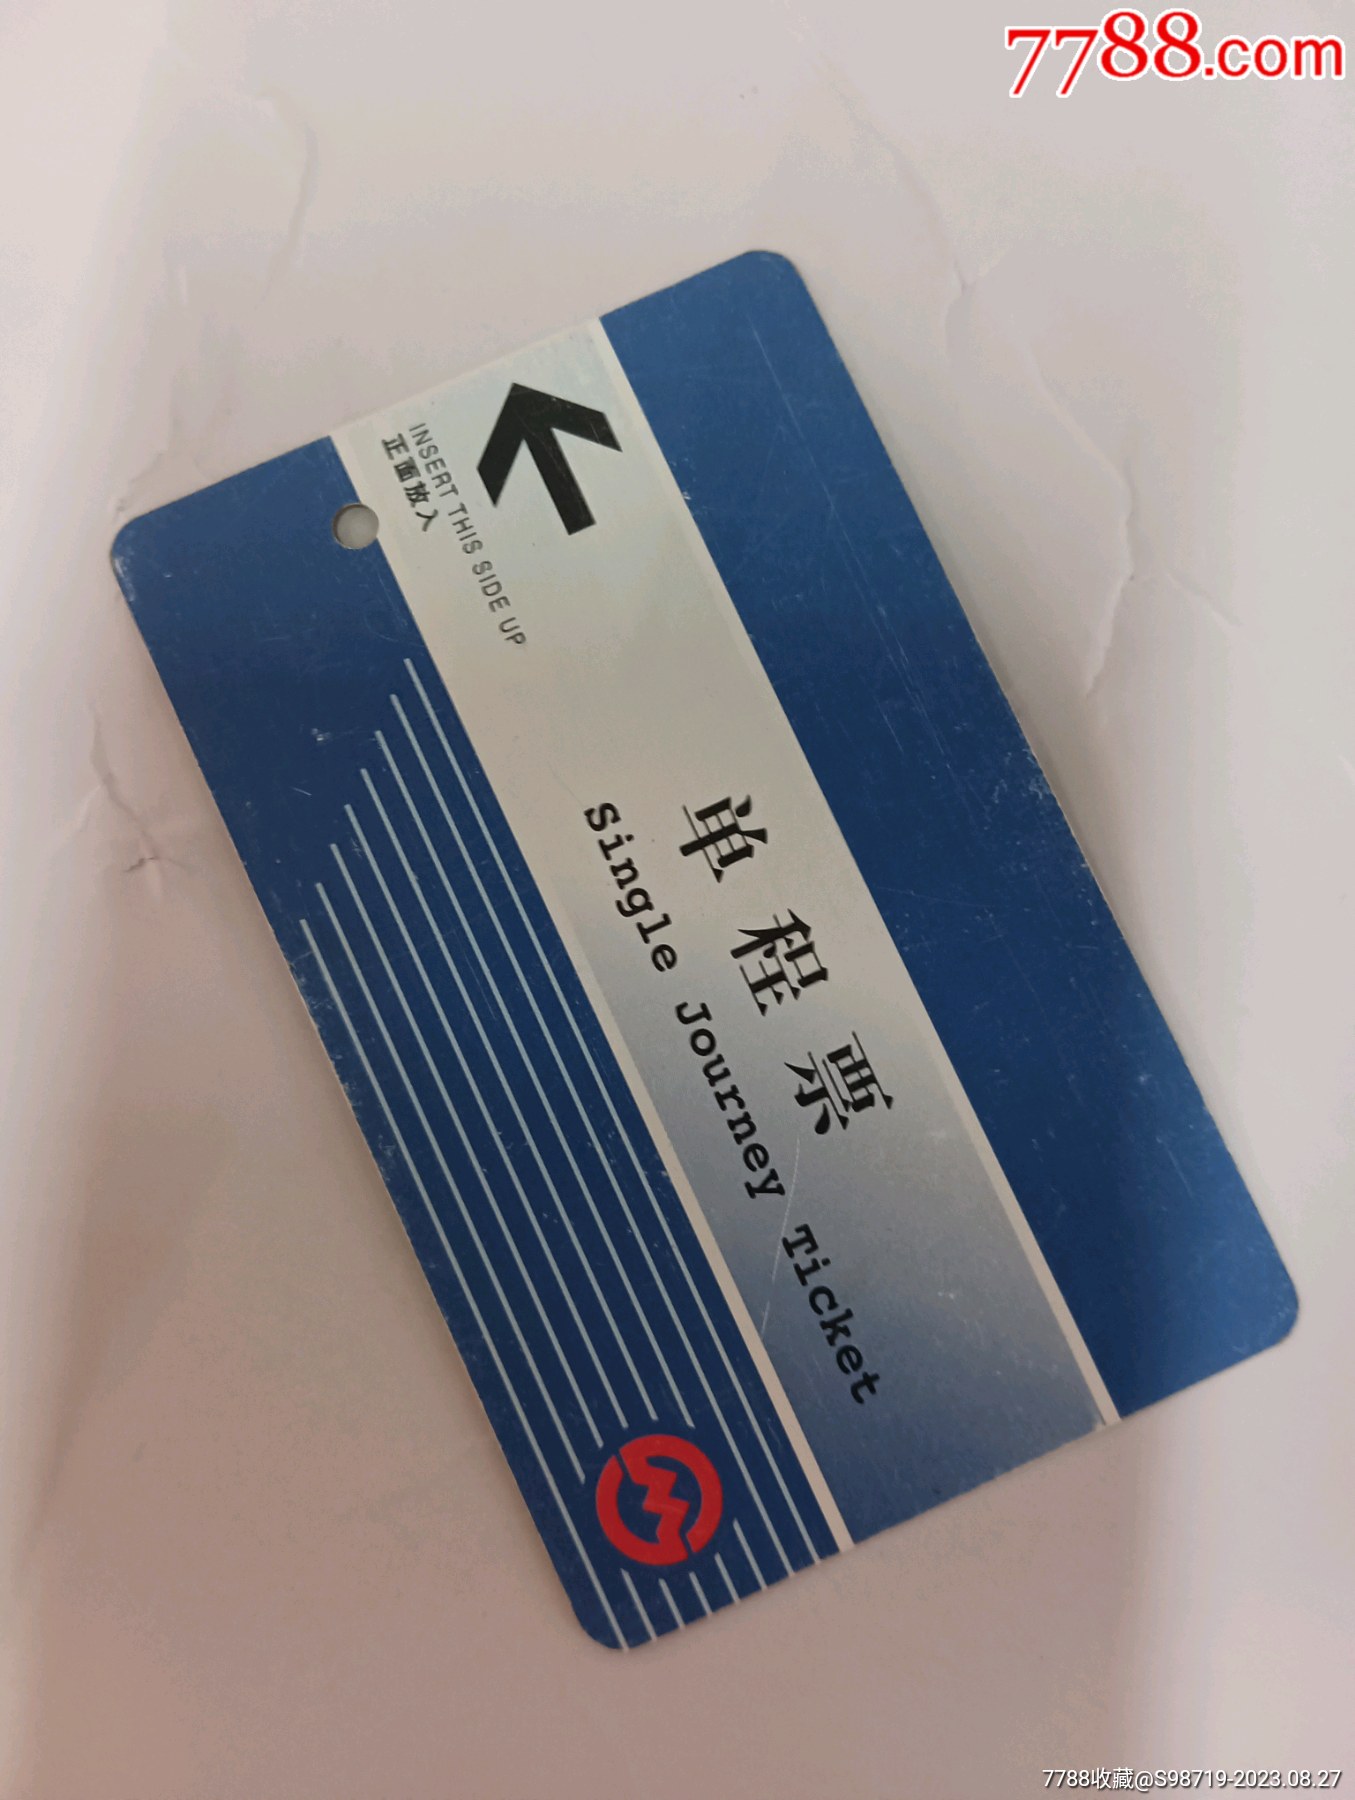 上海地铁票-价格:3元-se73937815-地铁/轨道车票-零售-7788收藏__收藏热线